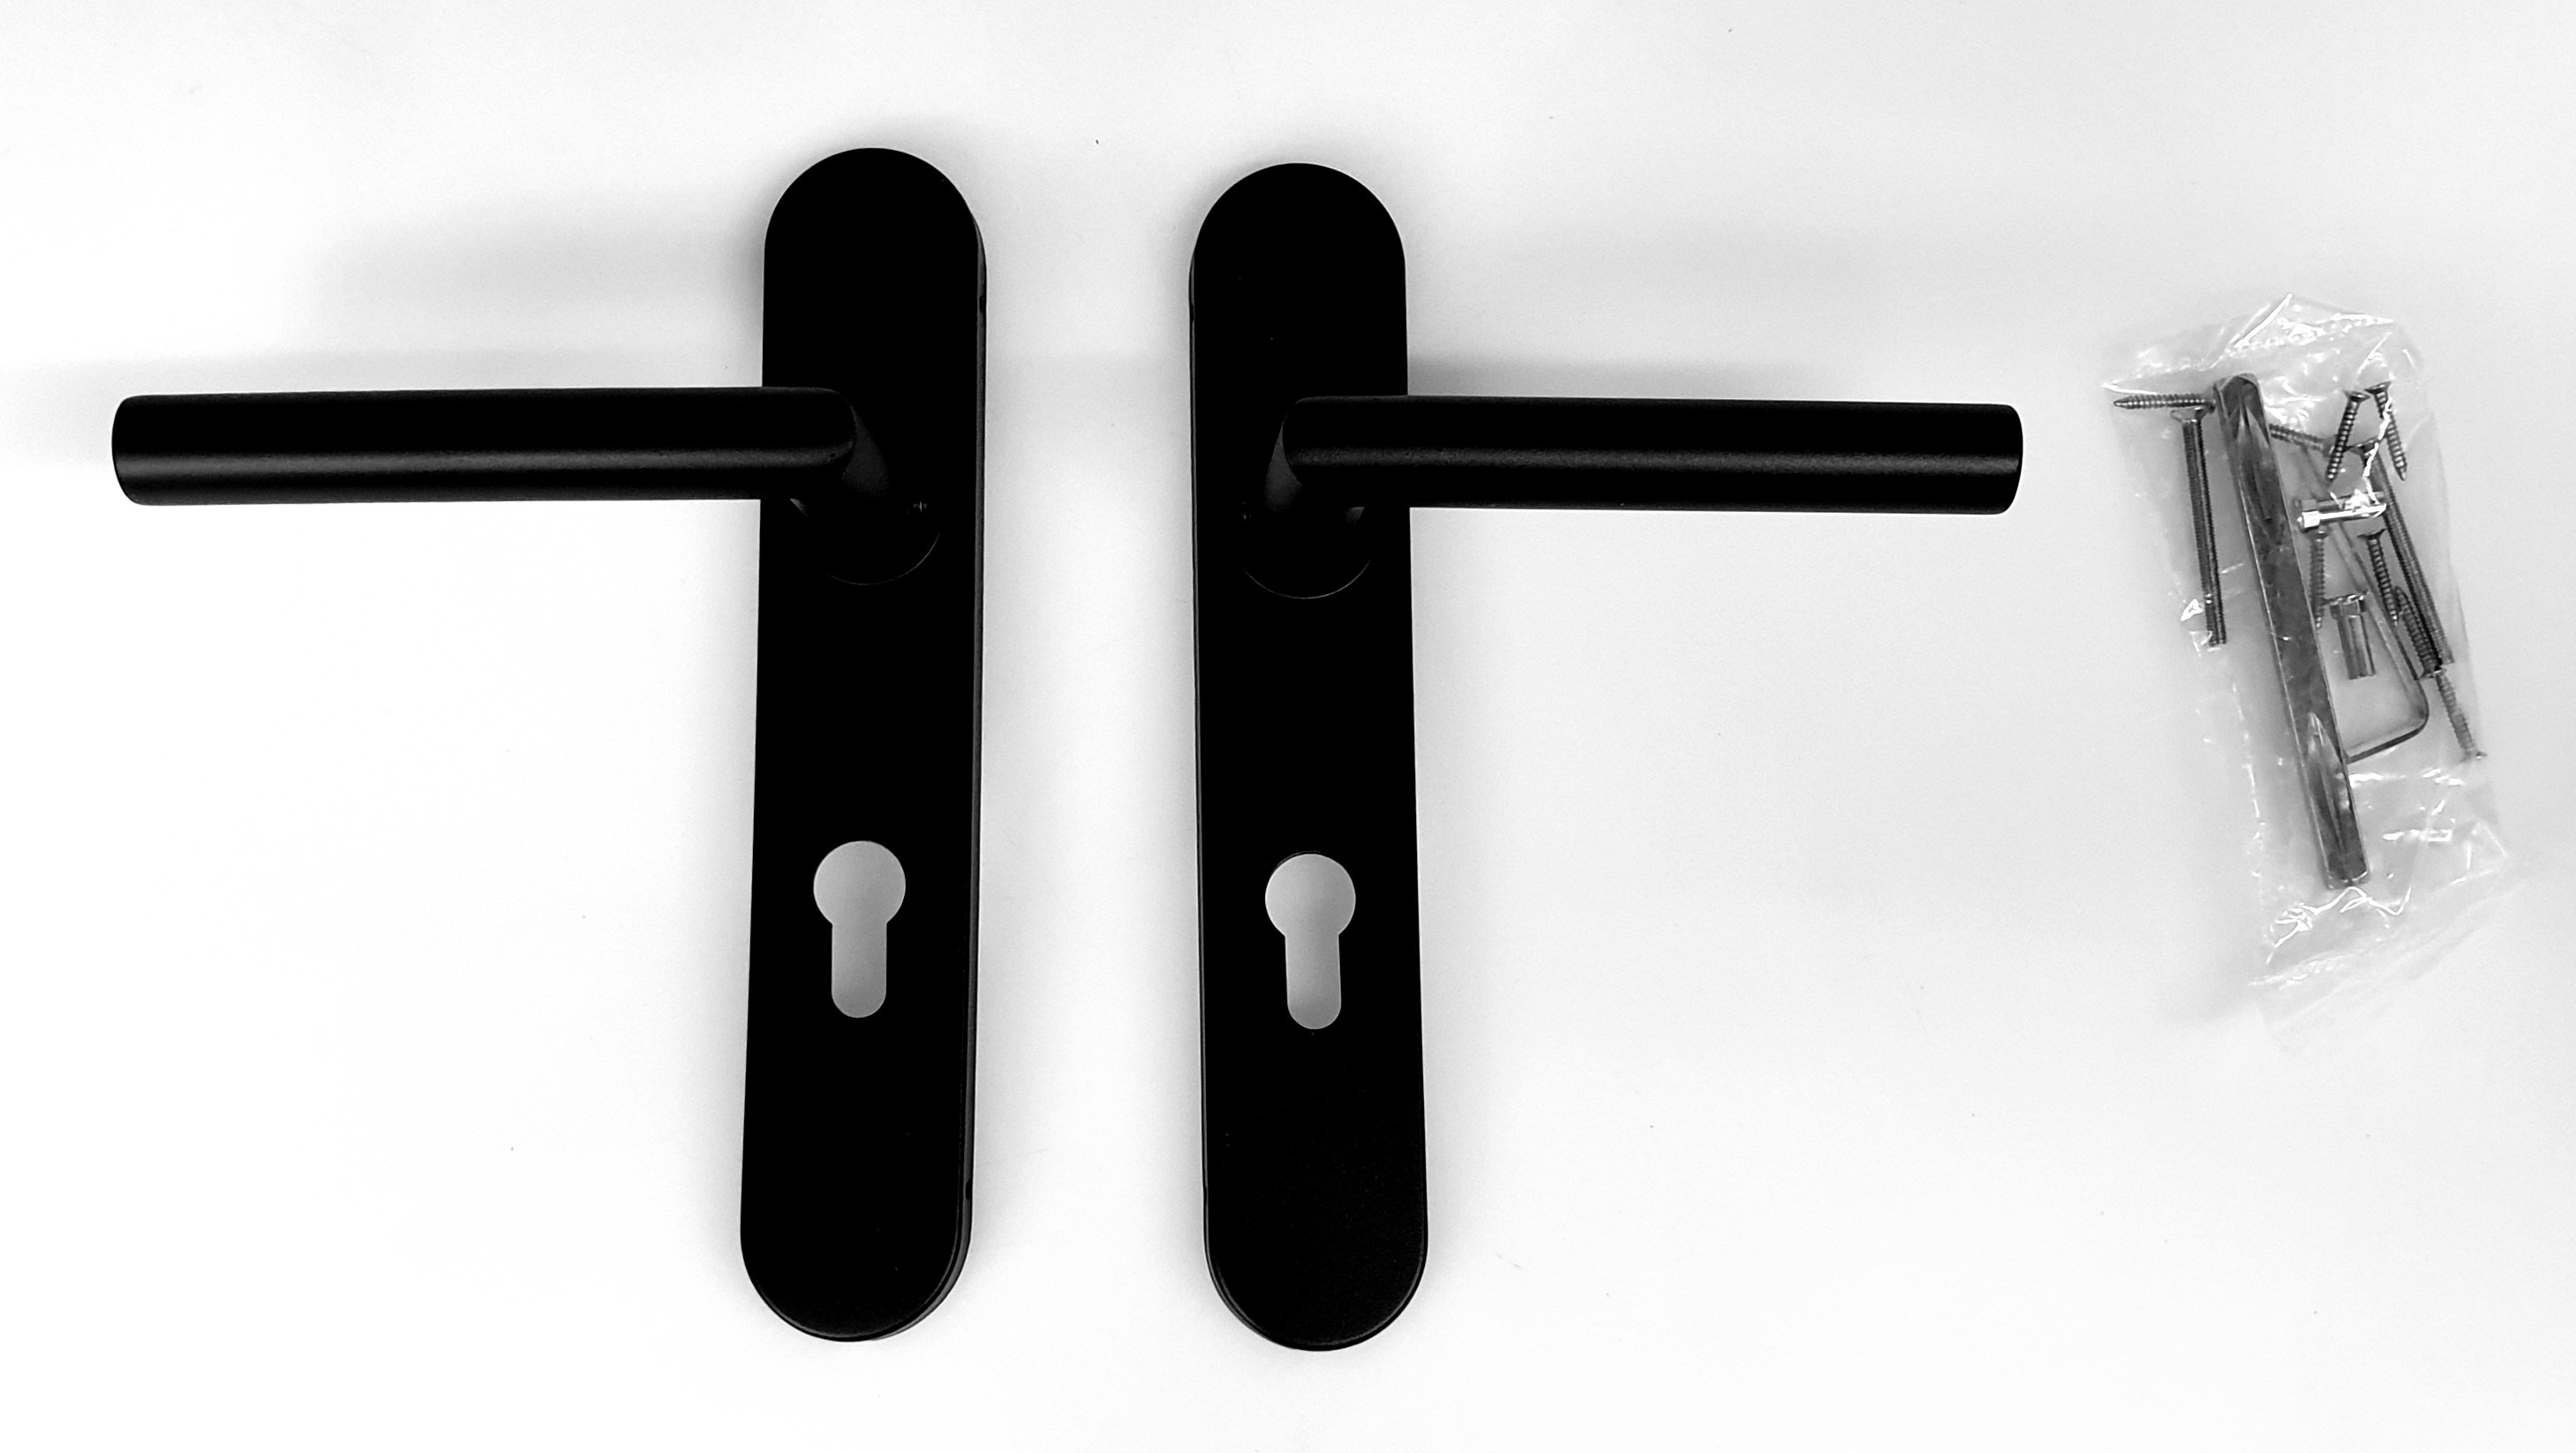 Deurkrukgarnituur, L-model haaks, vast gemonteerd op langschild 225x40mm, in kleur zwart met structuur, cilindergat pc72